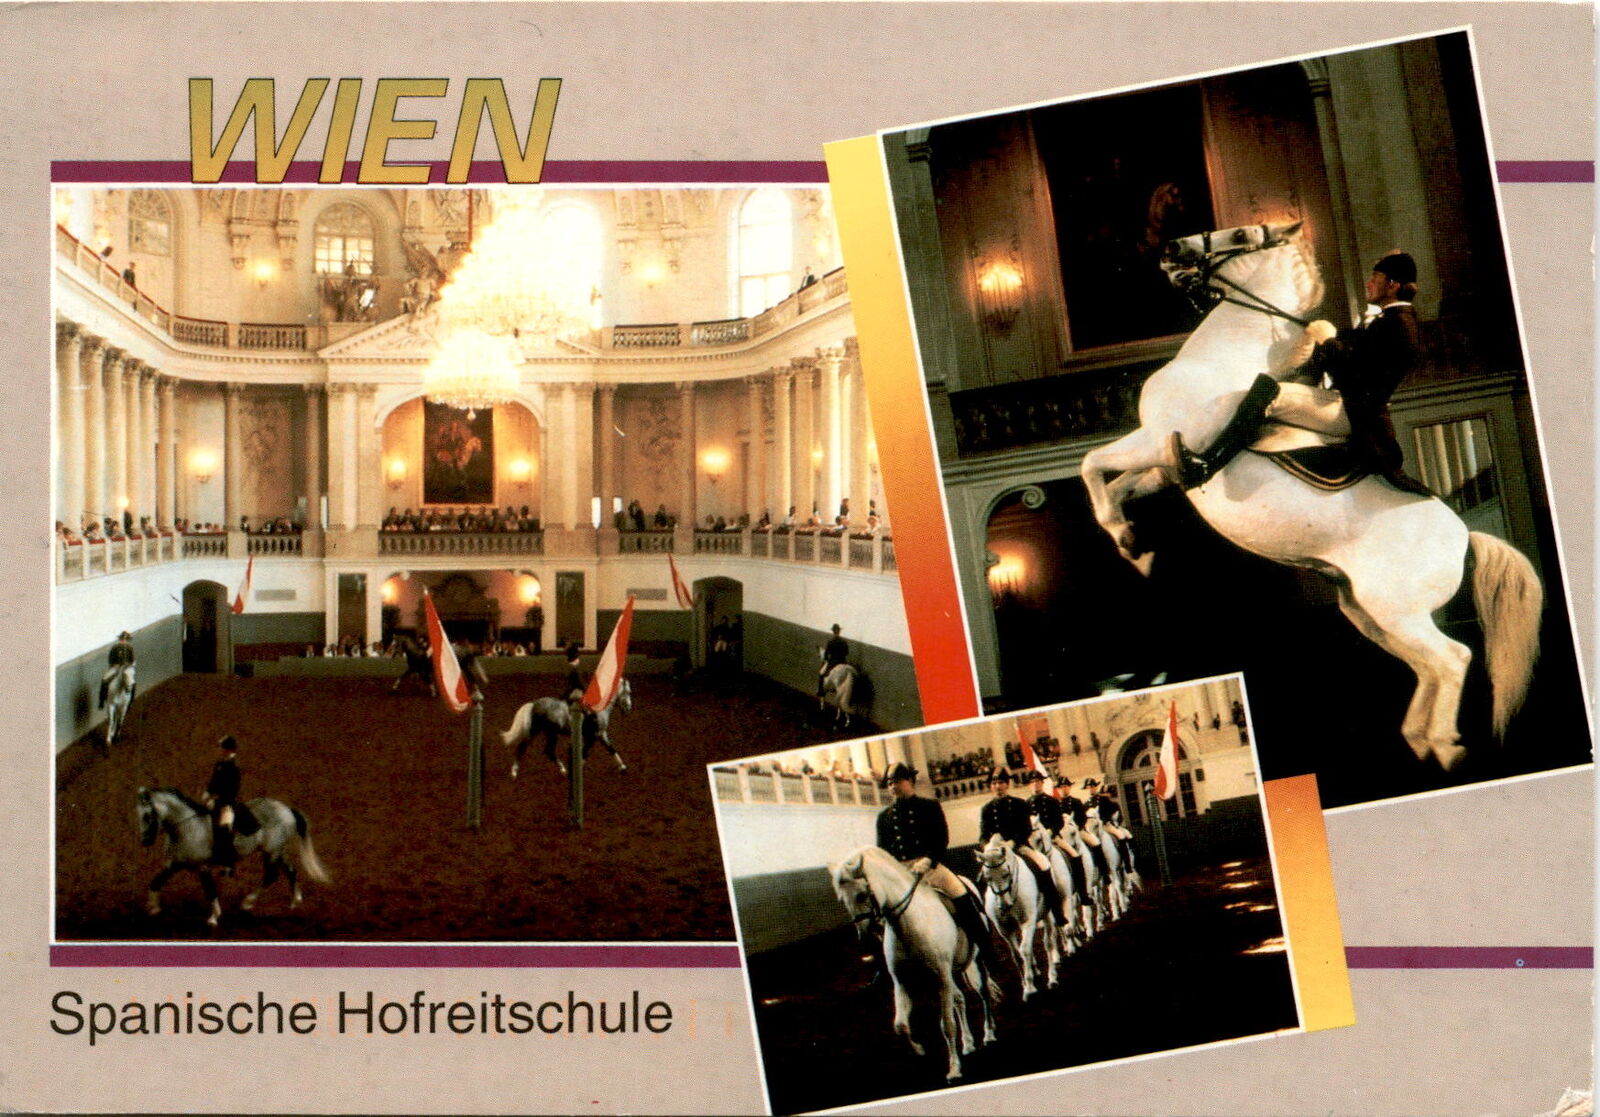 Spanische Hofreitschule, Wien, Vienna, Austria, equestrian Postcard